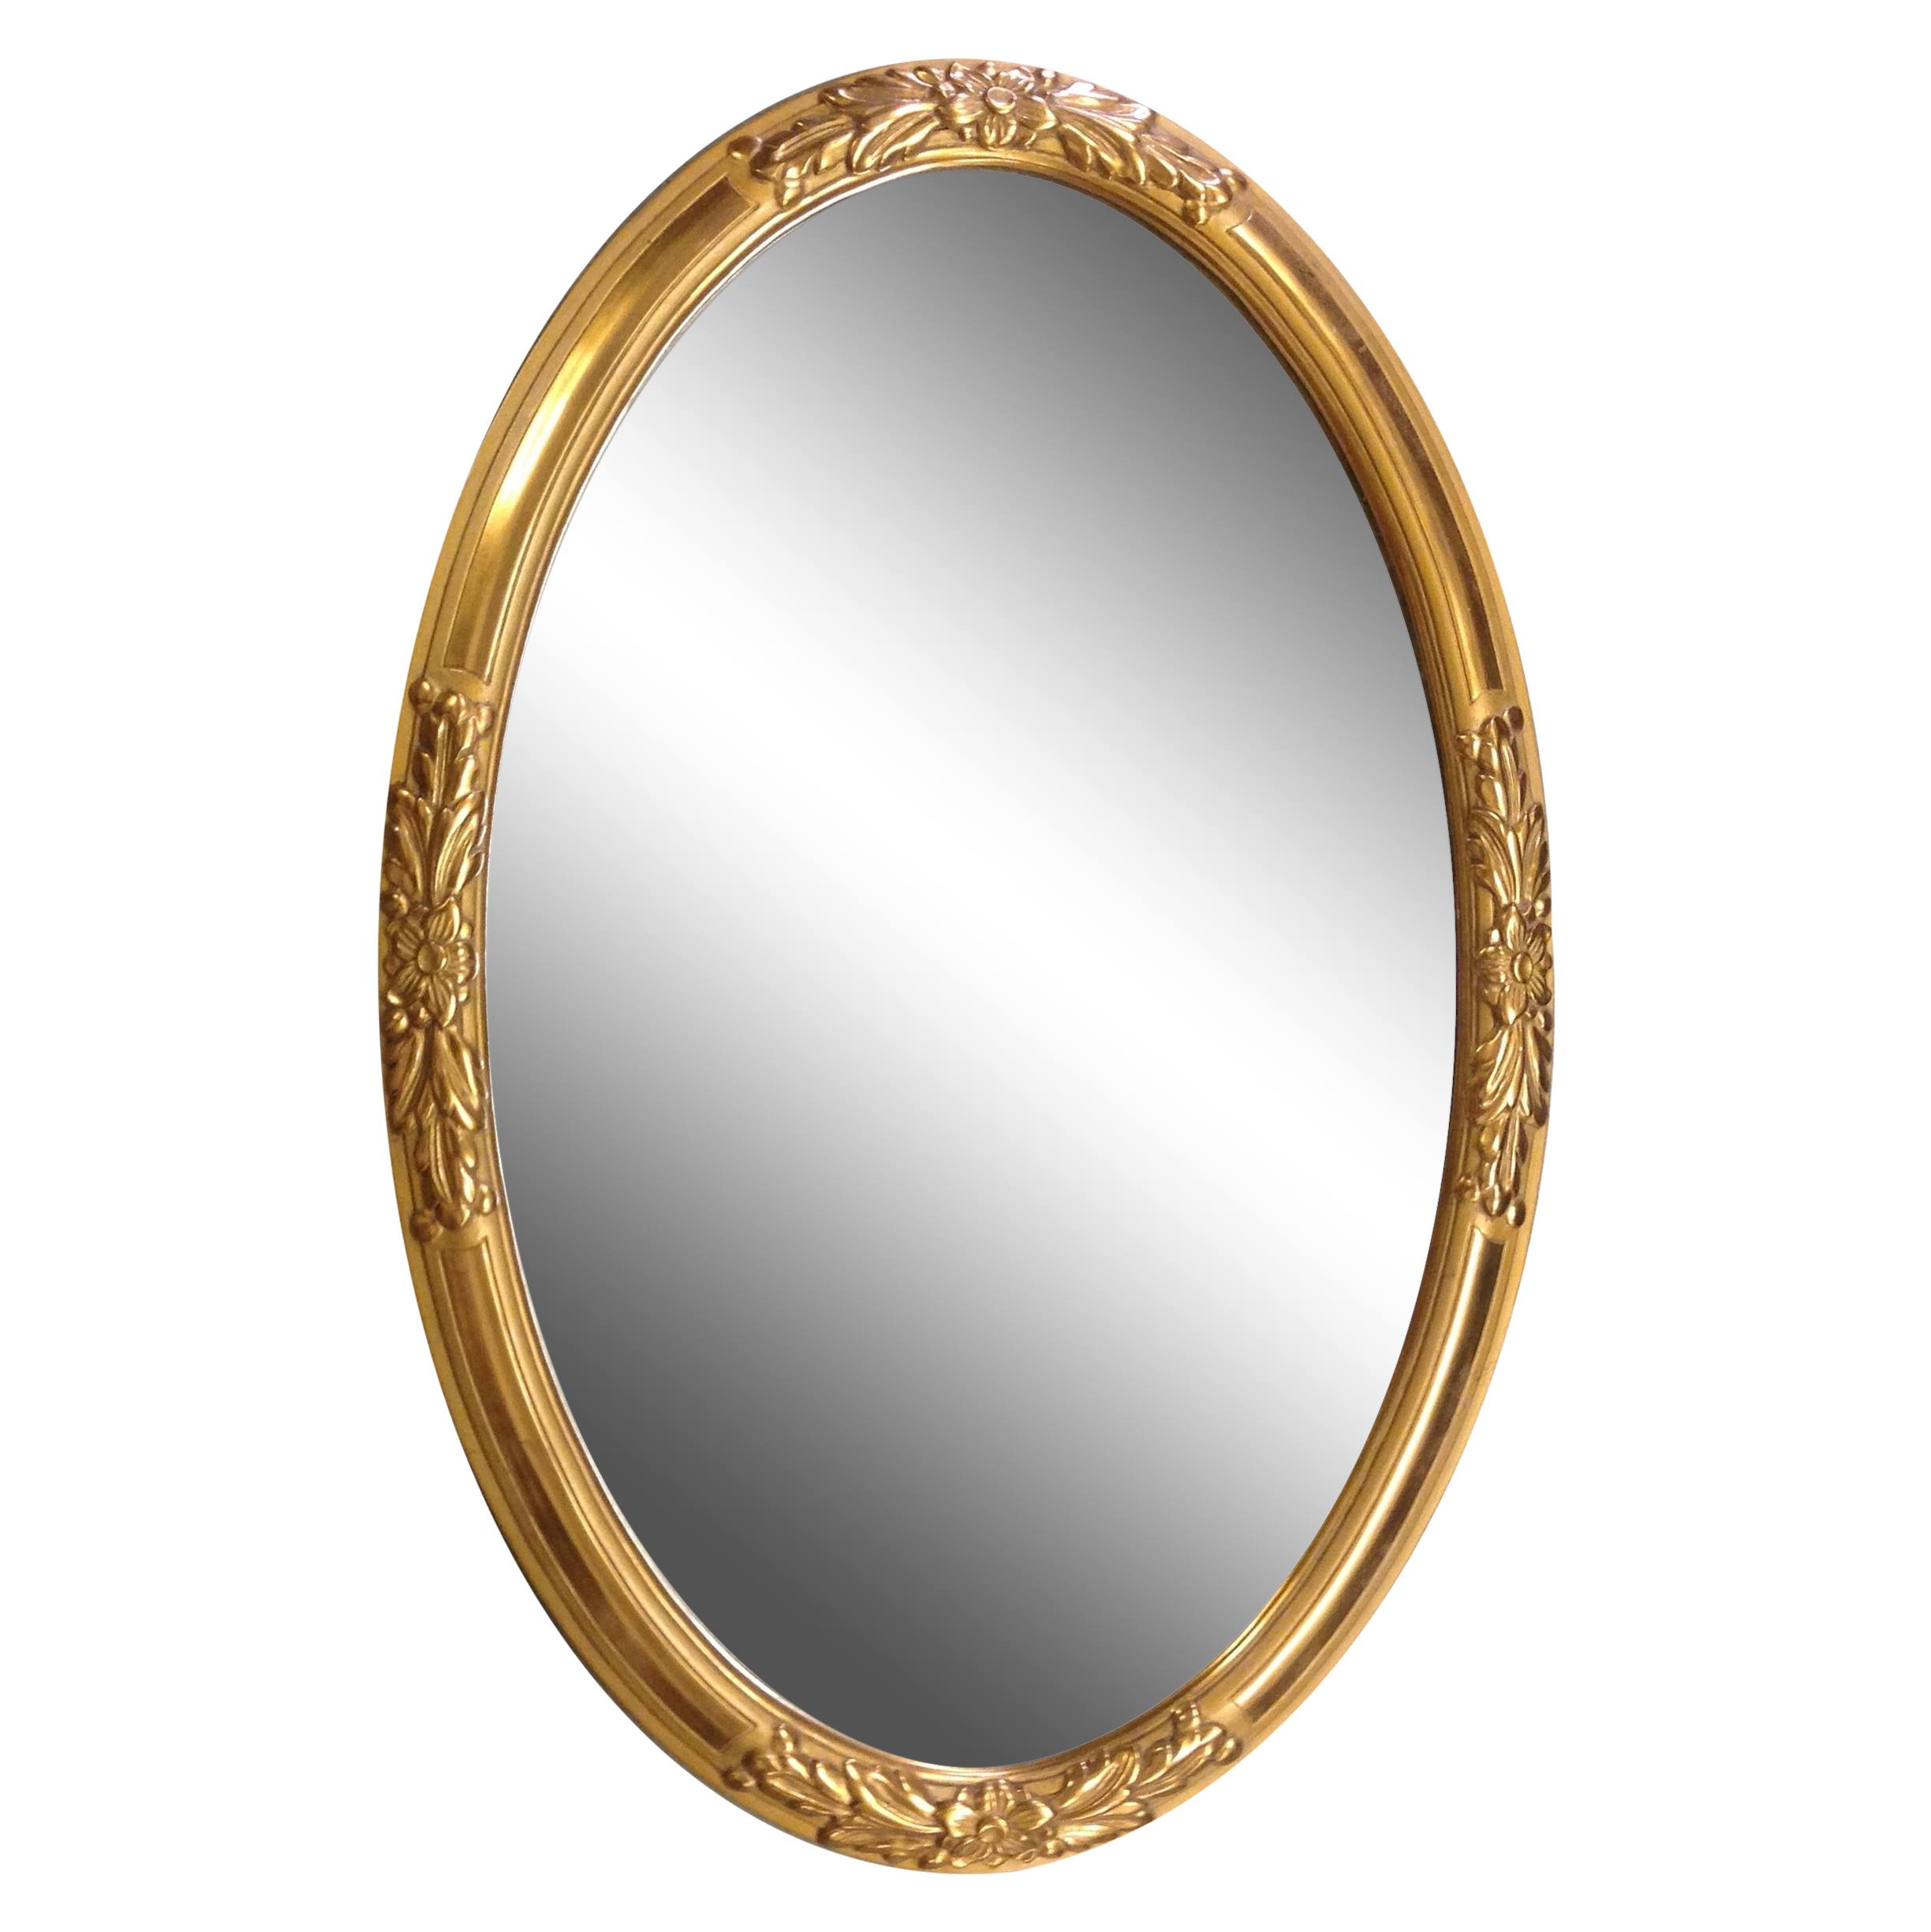 Imagens transparentes de quadro de espelho dourado